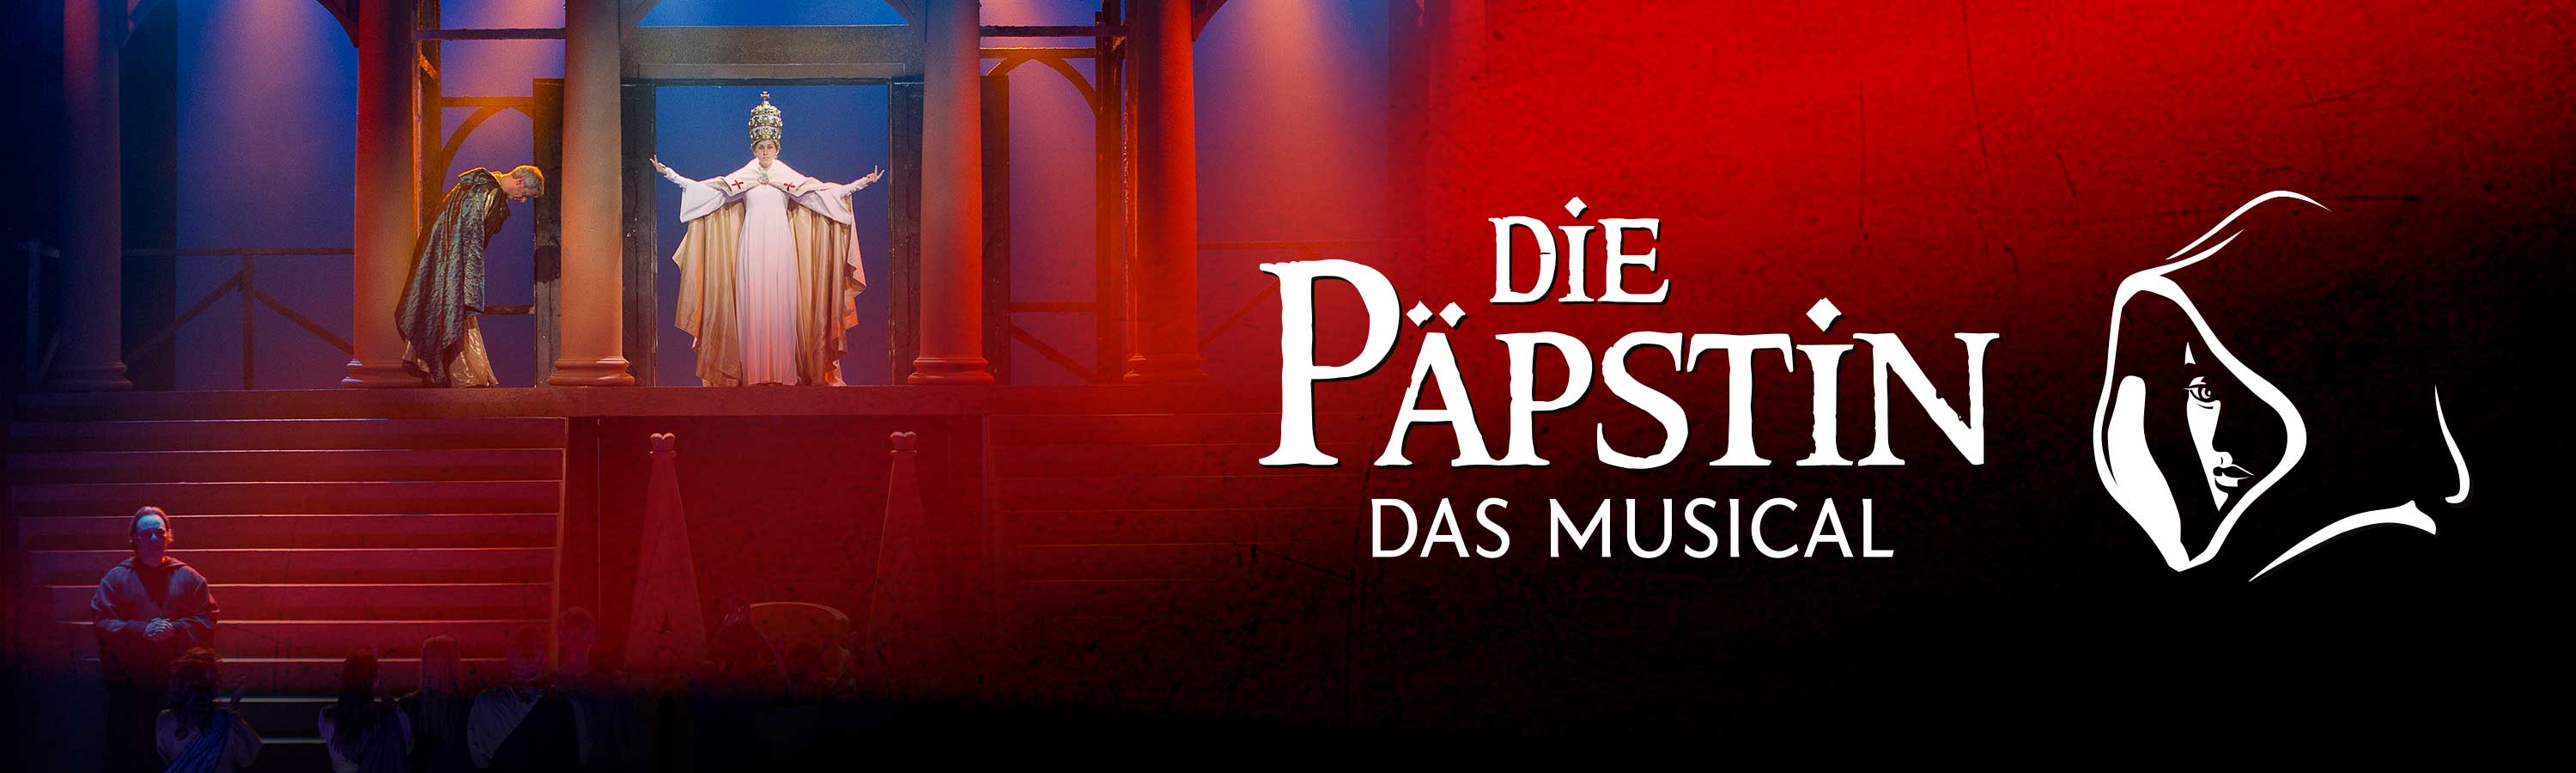 Die Päpstin - Das Musical